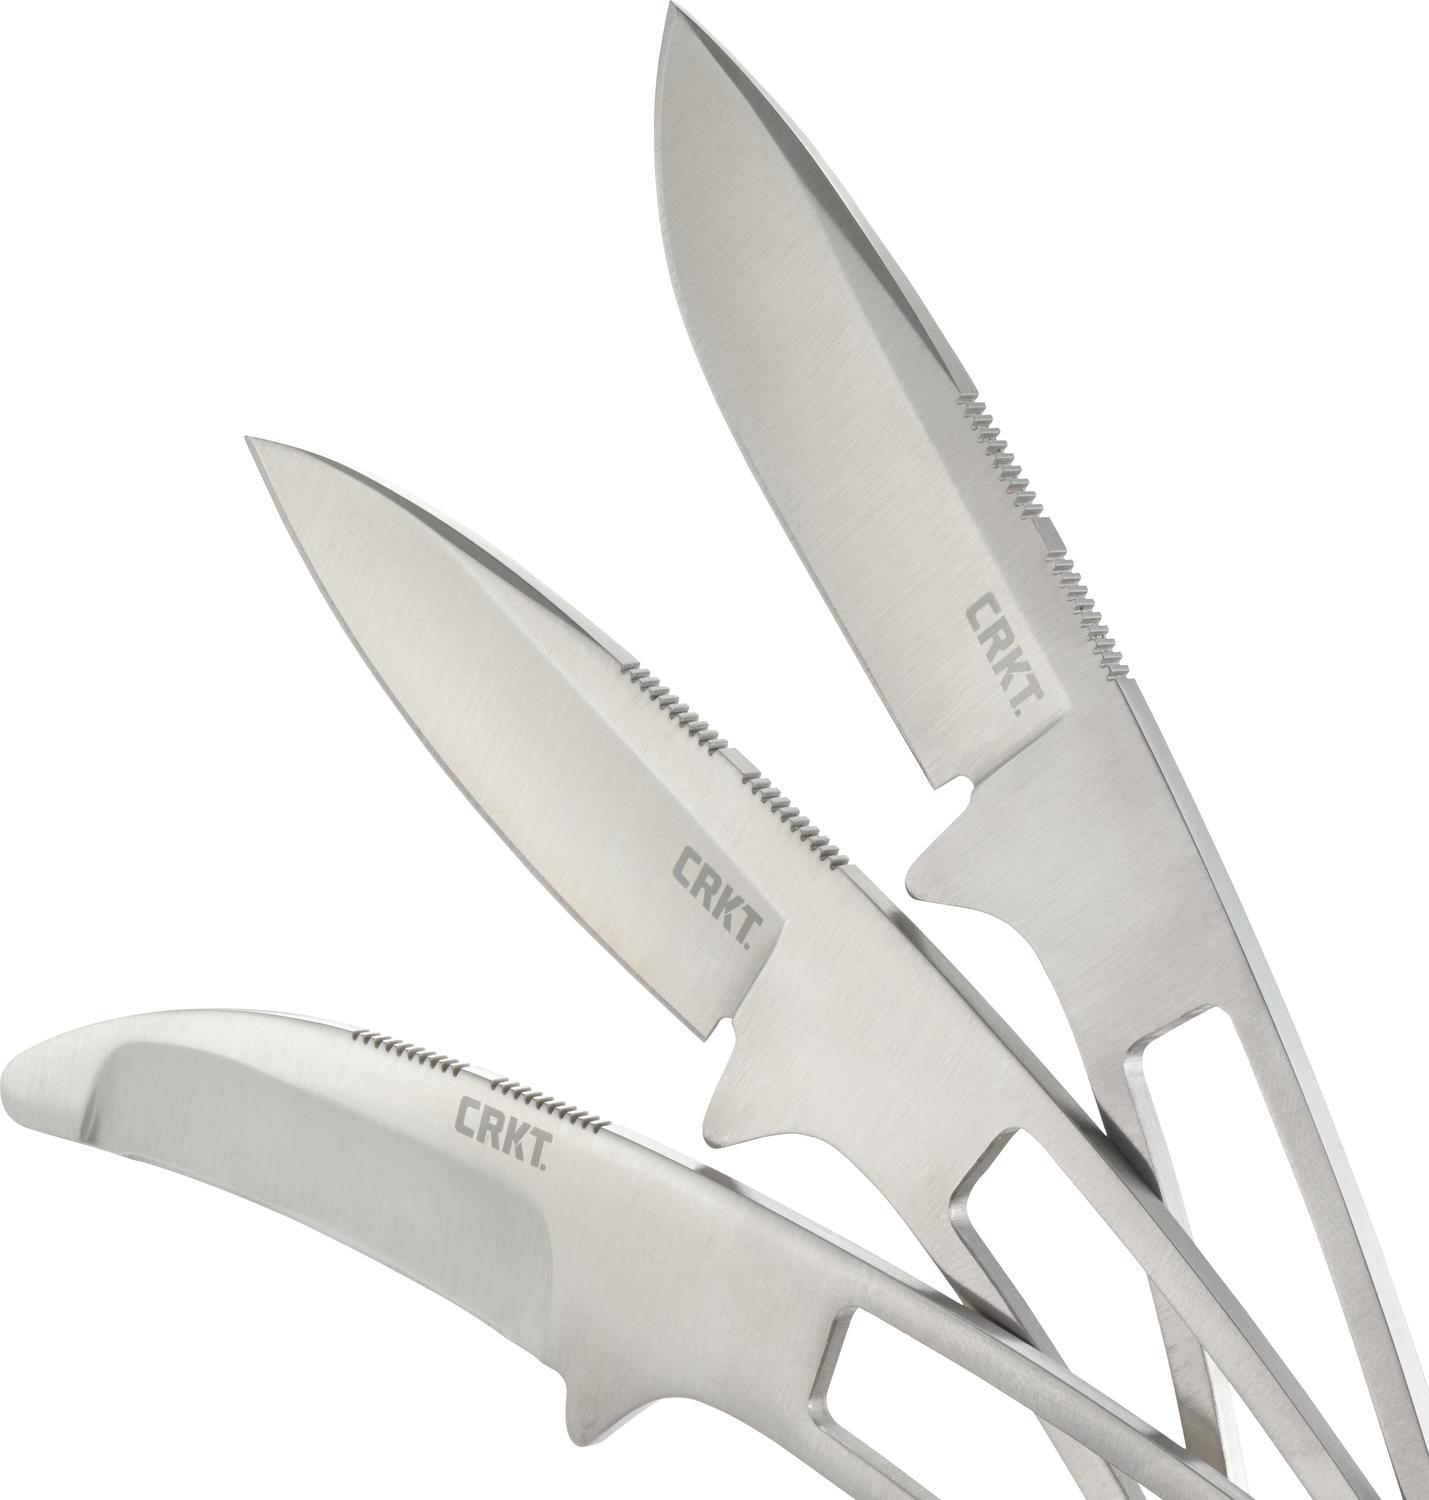 фото Набор из 3-х ножей фиксированным клинком crkt black fork hunting knife set, сталь 8cr13mov, цельнометаллические